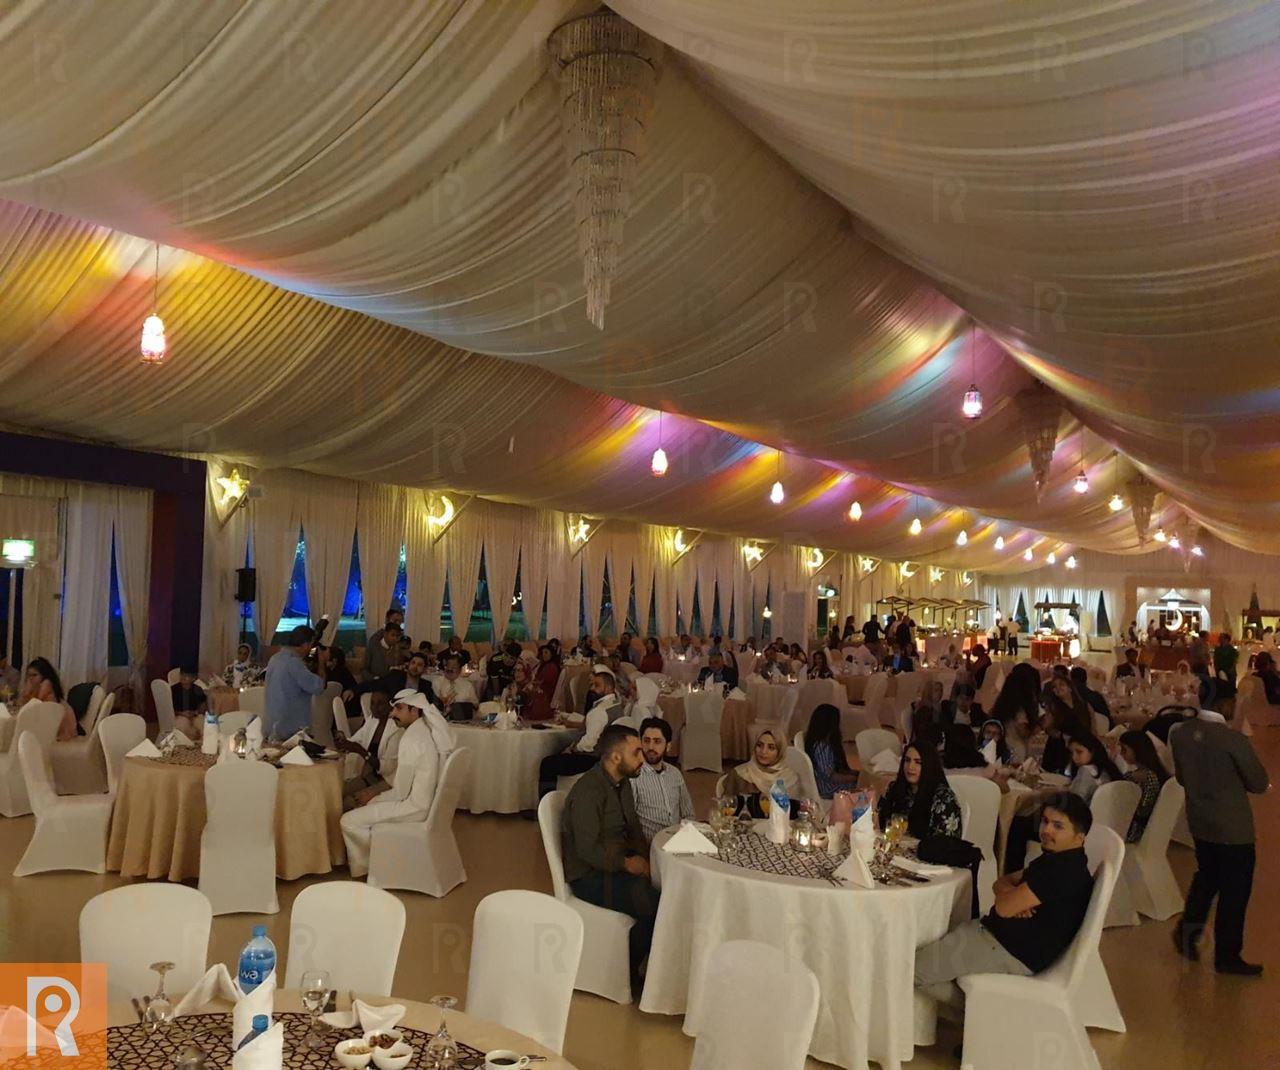 فندق سفير الفنطاس يُقيم أمسية القريش للصحافة والإعلام في الخيمة الملكية الرمضانية